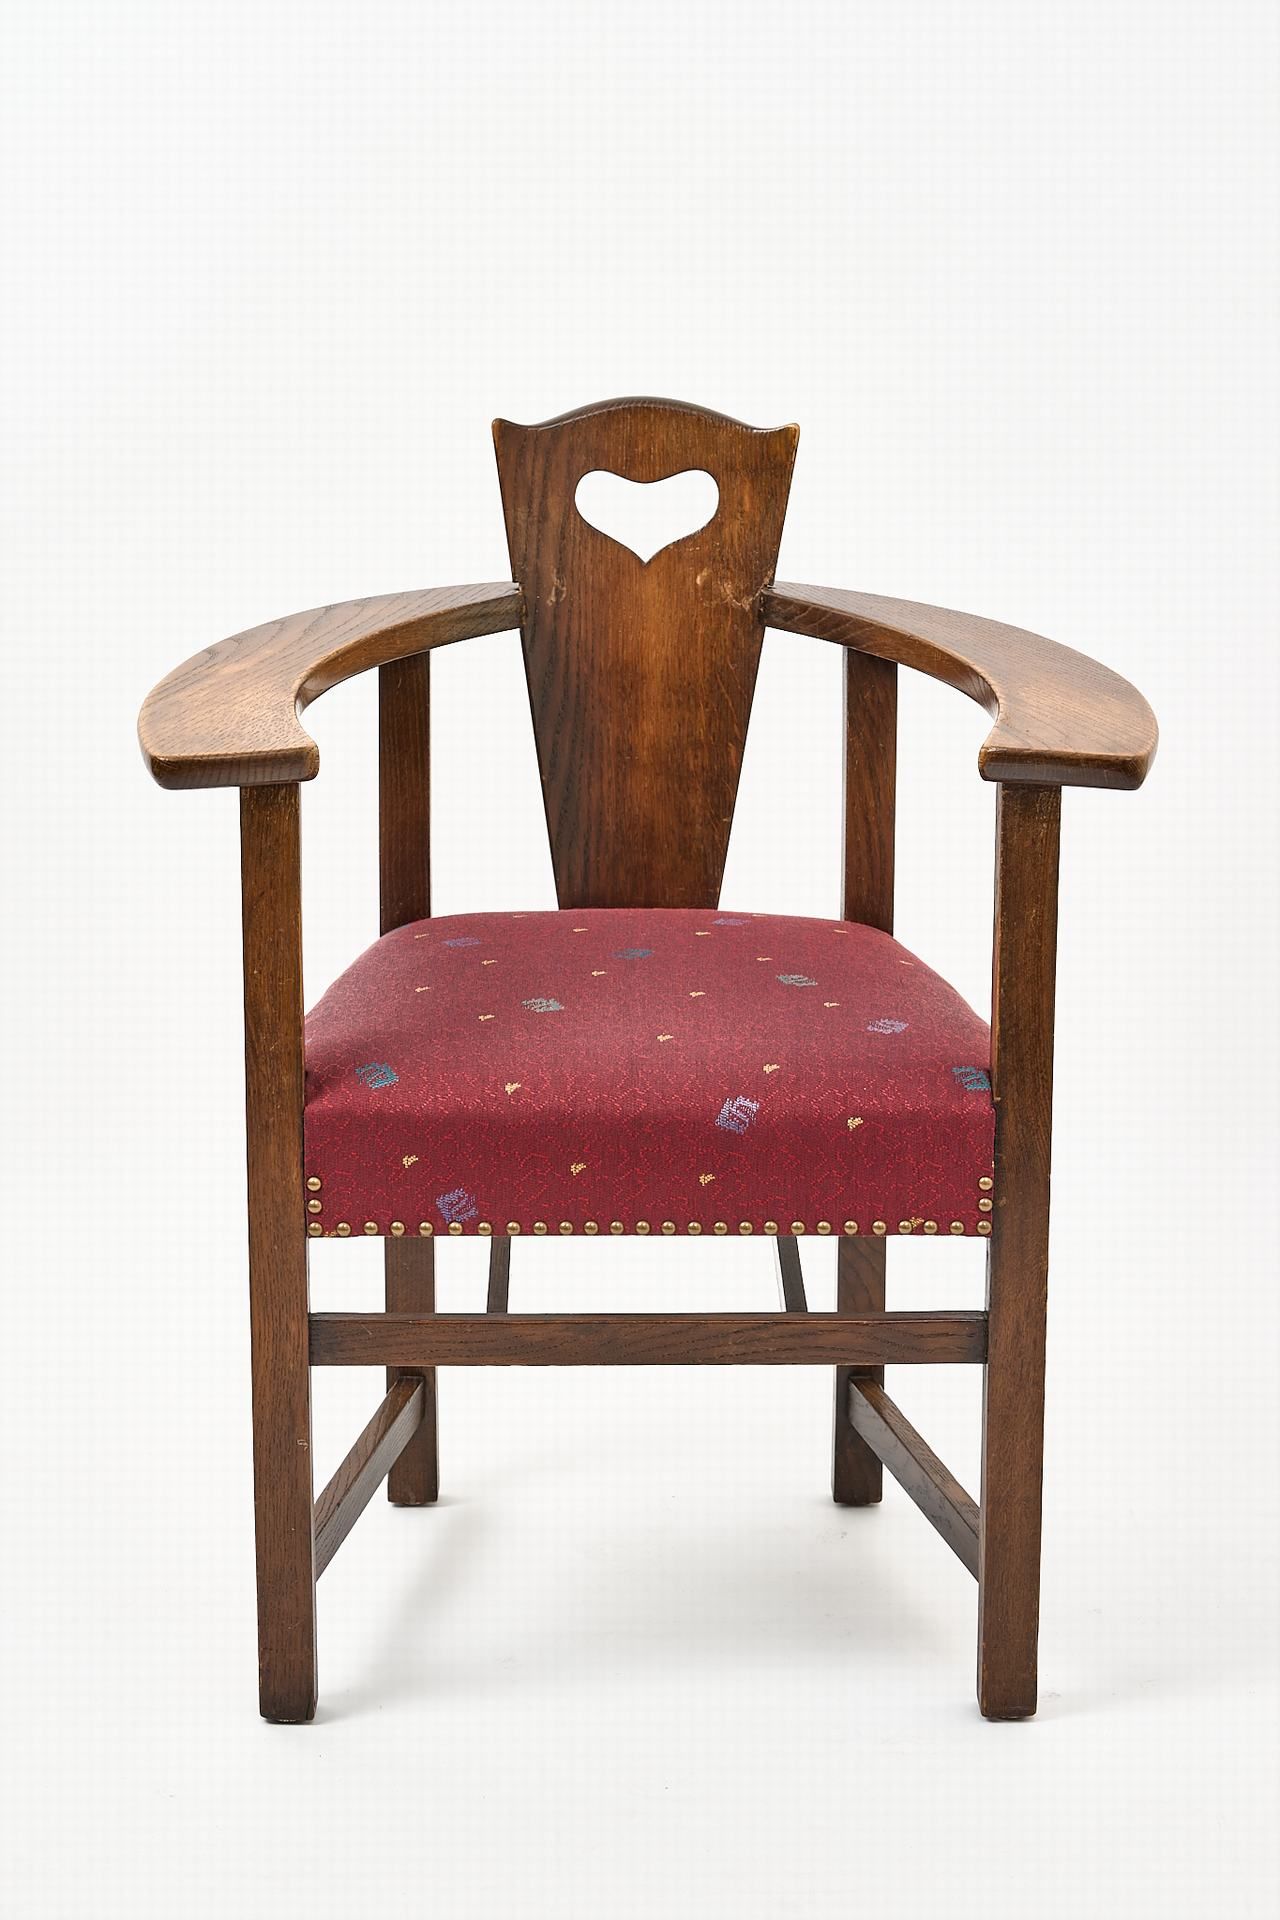 Abingwood-Stuhl 乔治-沃尔顿橡木，直腿和框架，软垫座椅。宽扶手，带心形镂空的靠背。高 87 厘米，宽 70 厘米。座高 50 厘米。